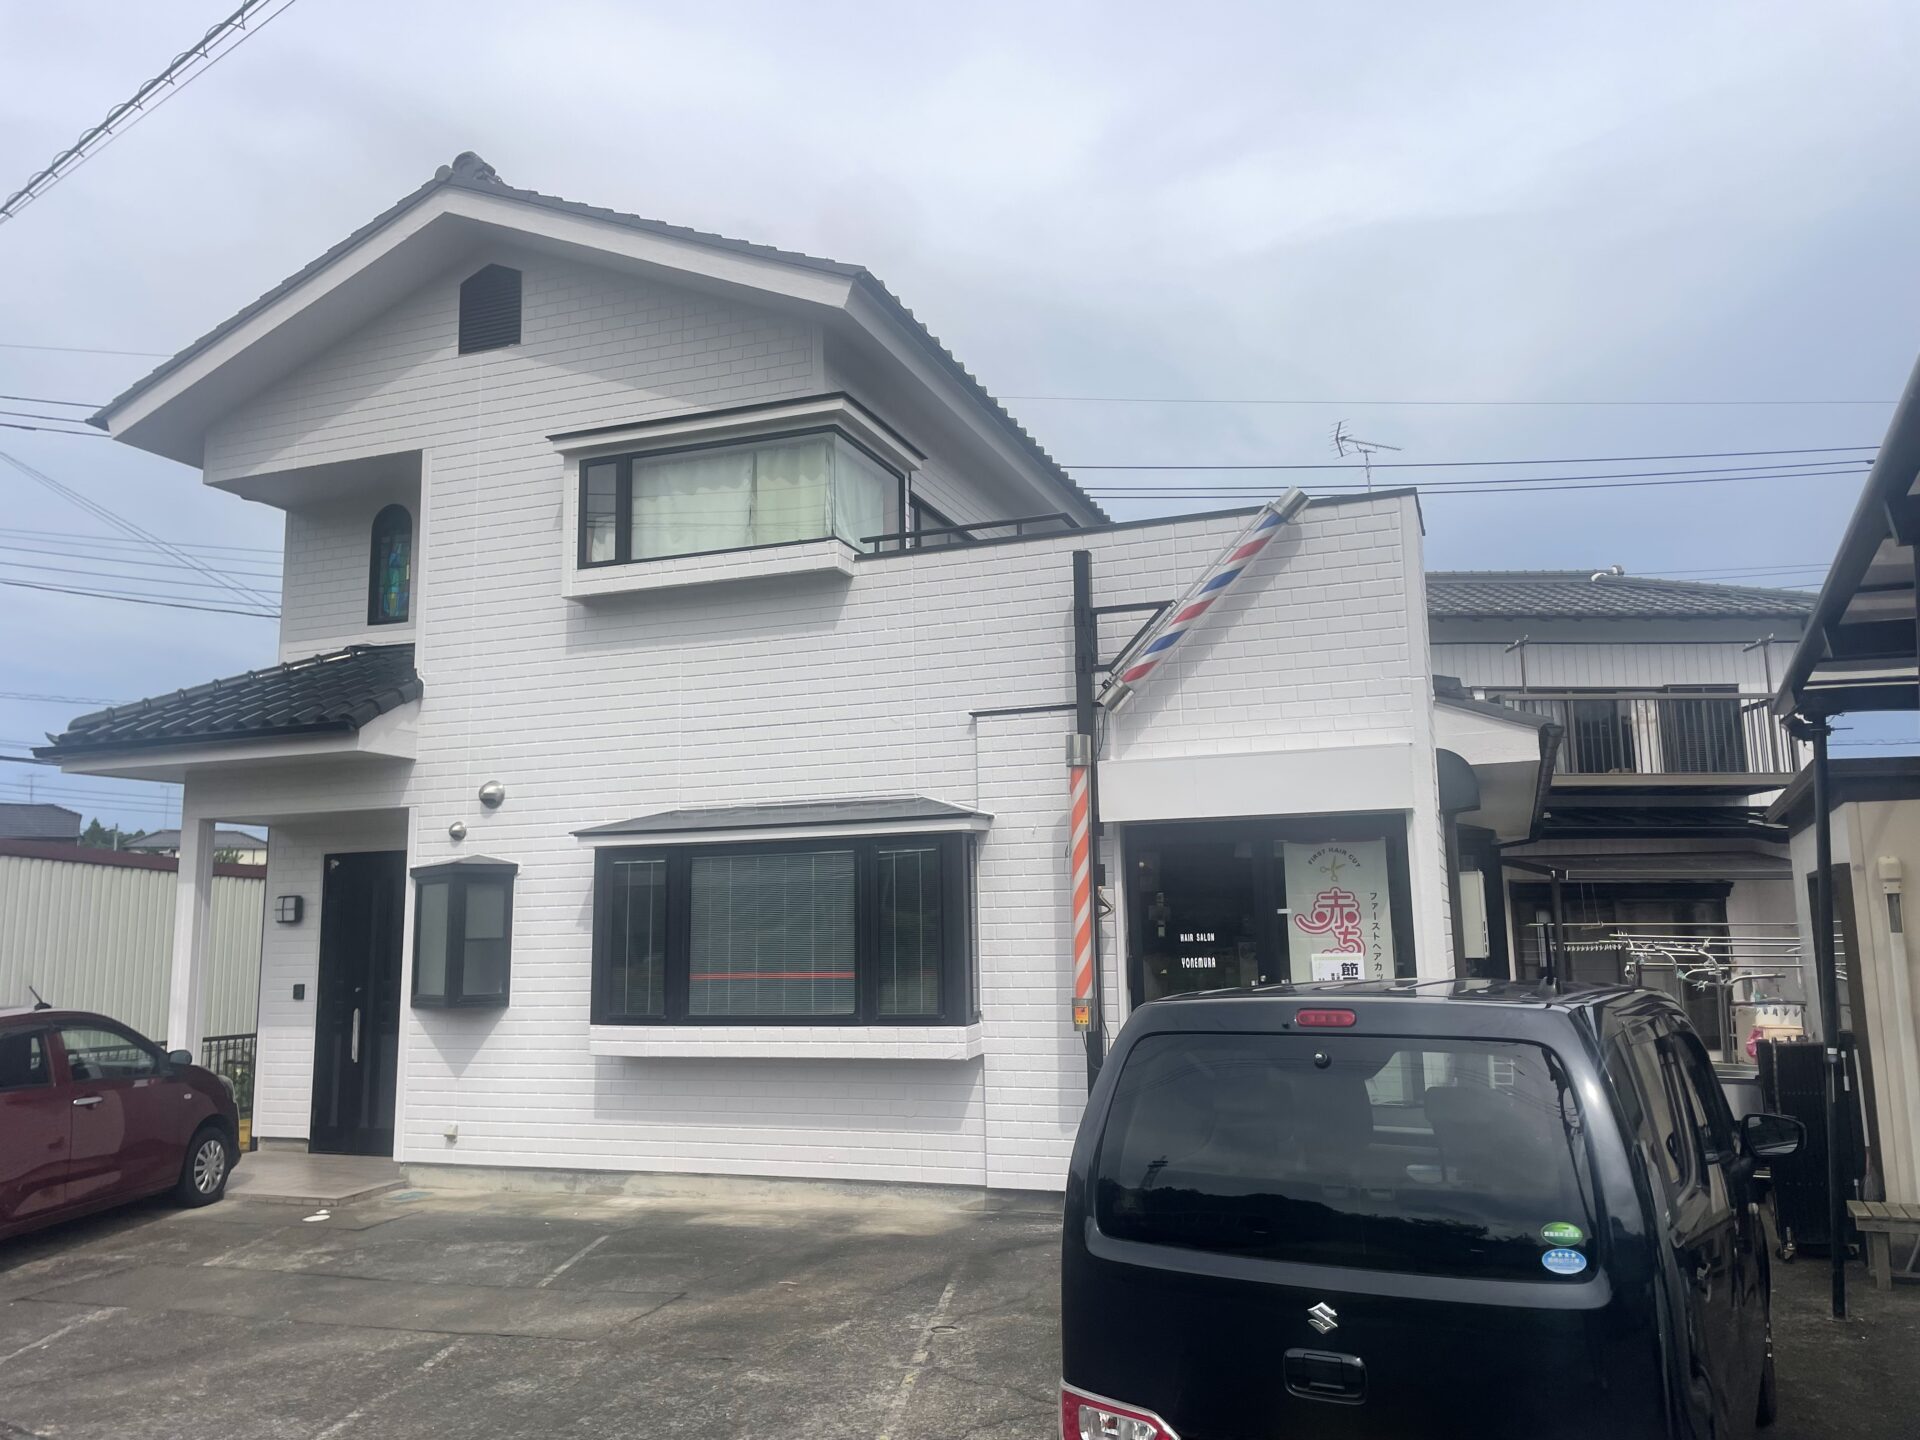 埼玉県吉見町で外壁を塗装して雨樋交換と屋根漆喰の補修も行いました。